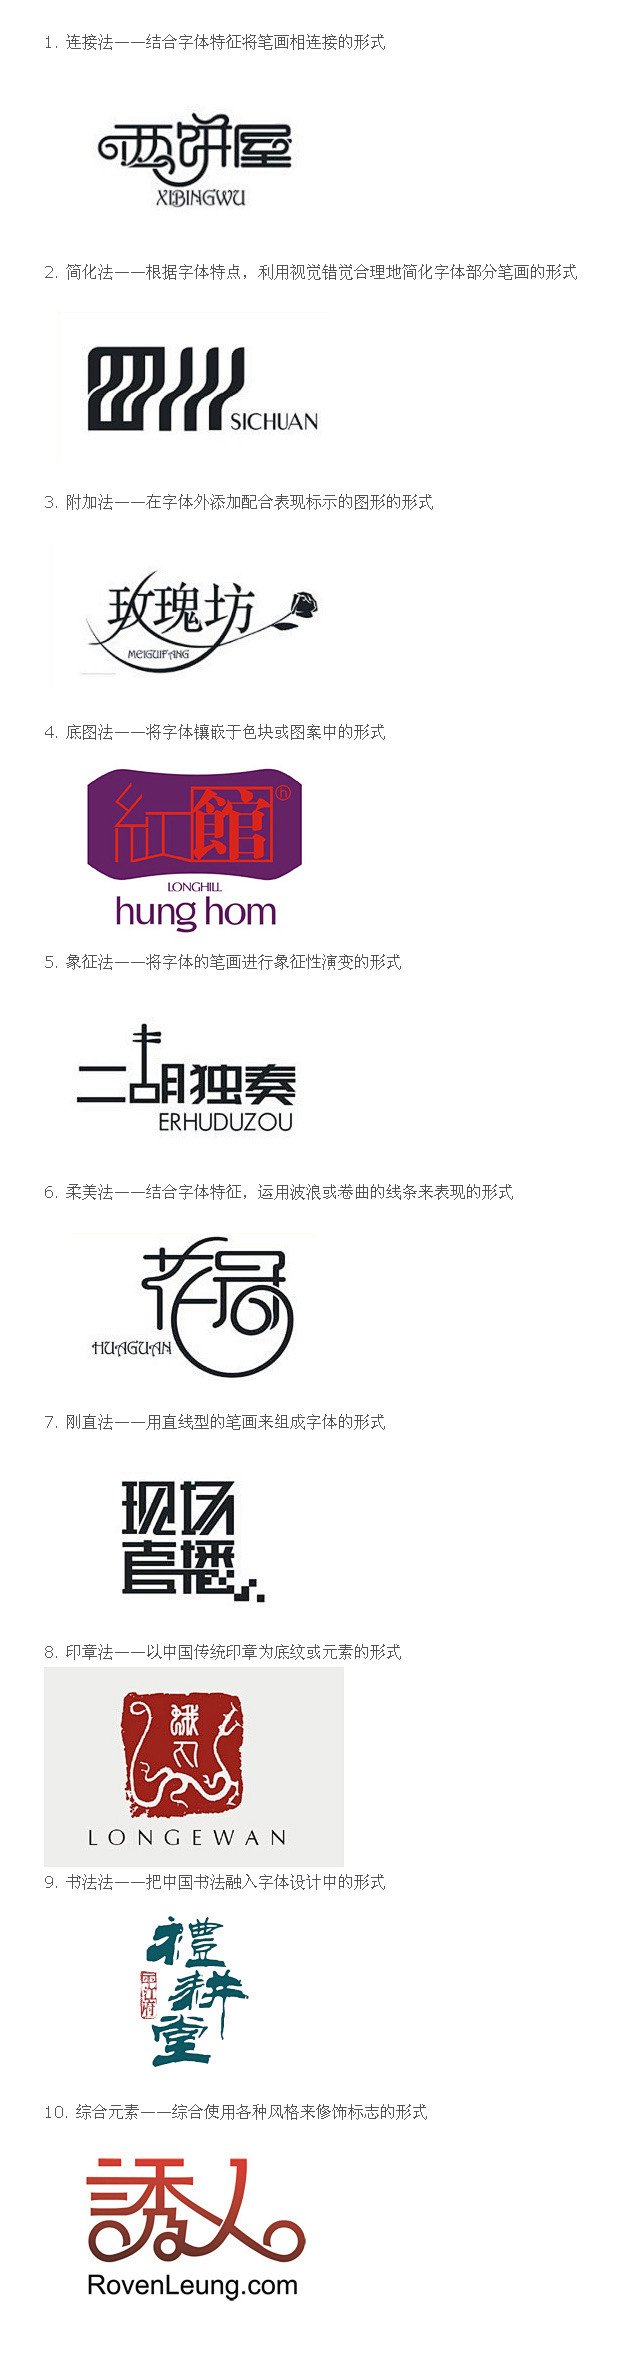 中文标志LOGO设计教程：10种中文字体...